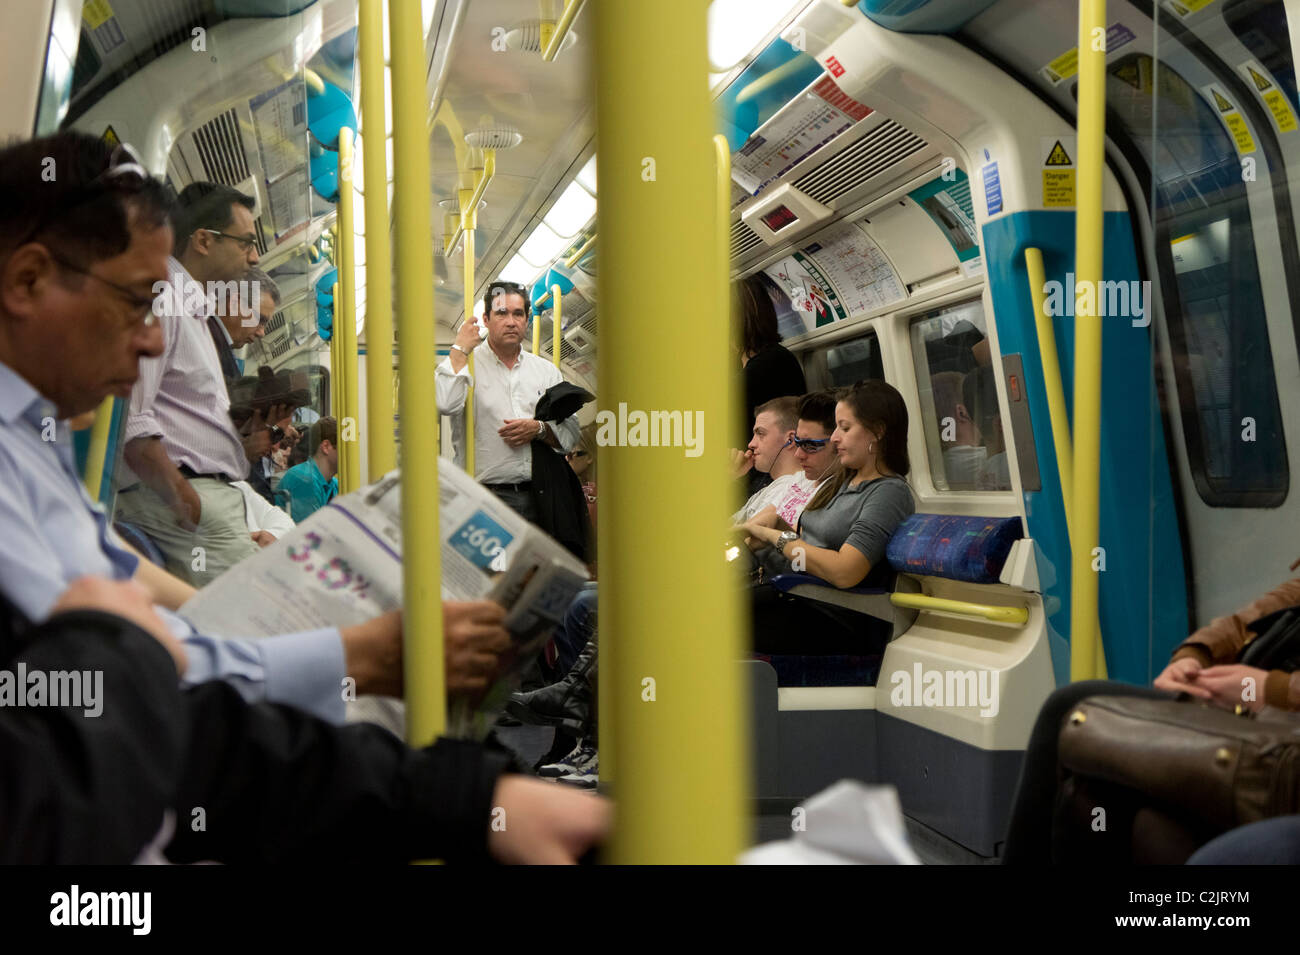 Les passagers de lire les journaux dans un Londres Underground tube train, Londres, Angleterre, Royaume-Uni Banque D'Images